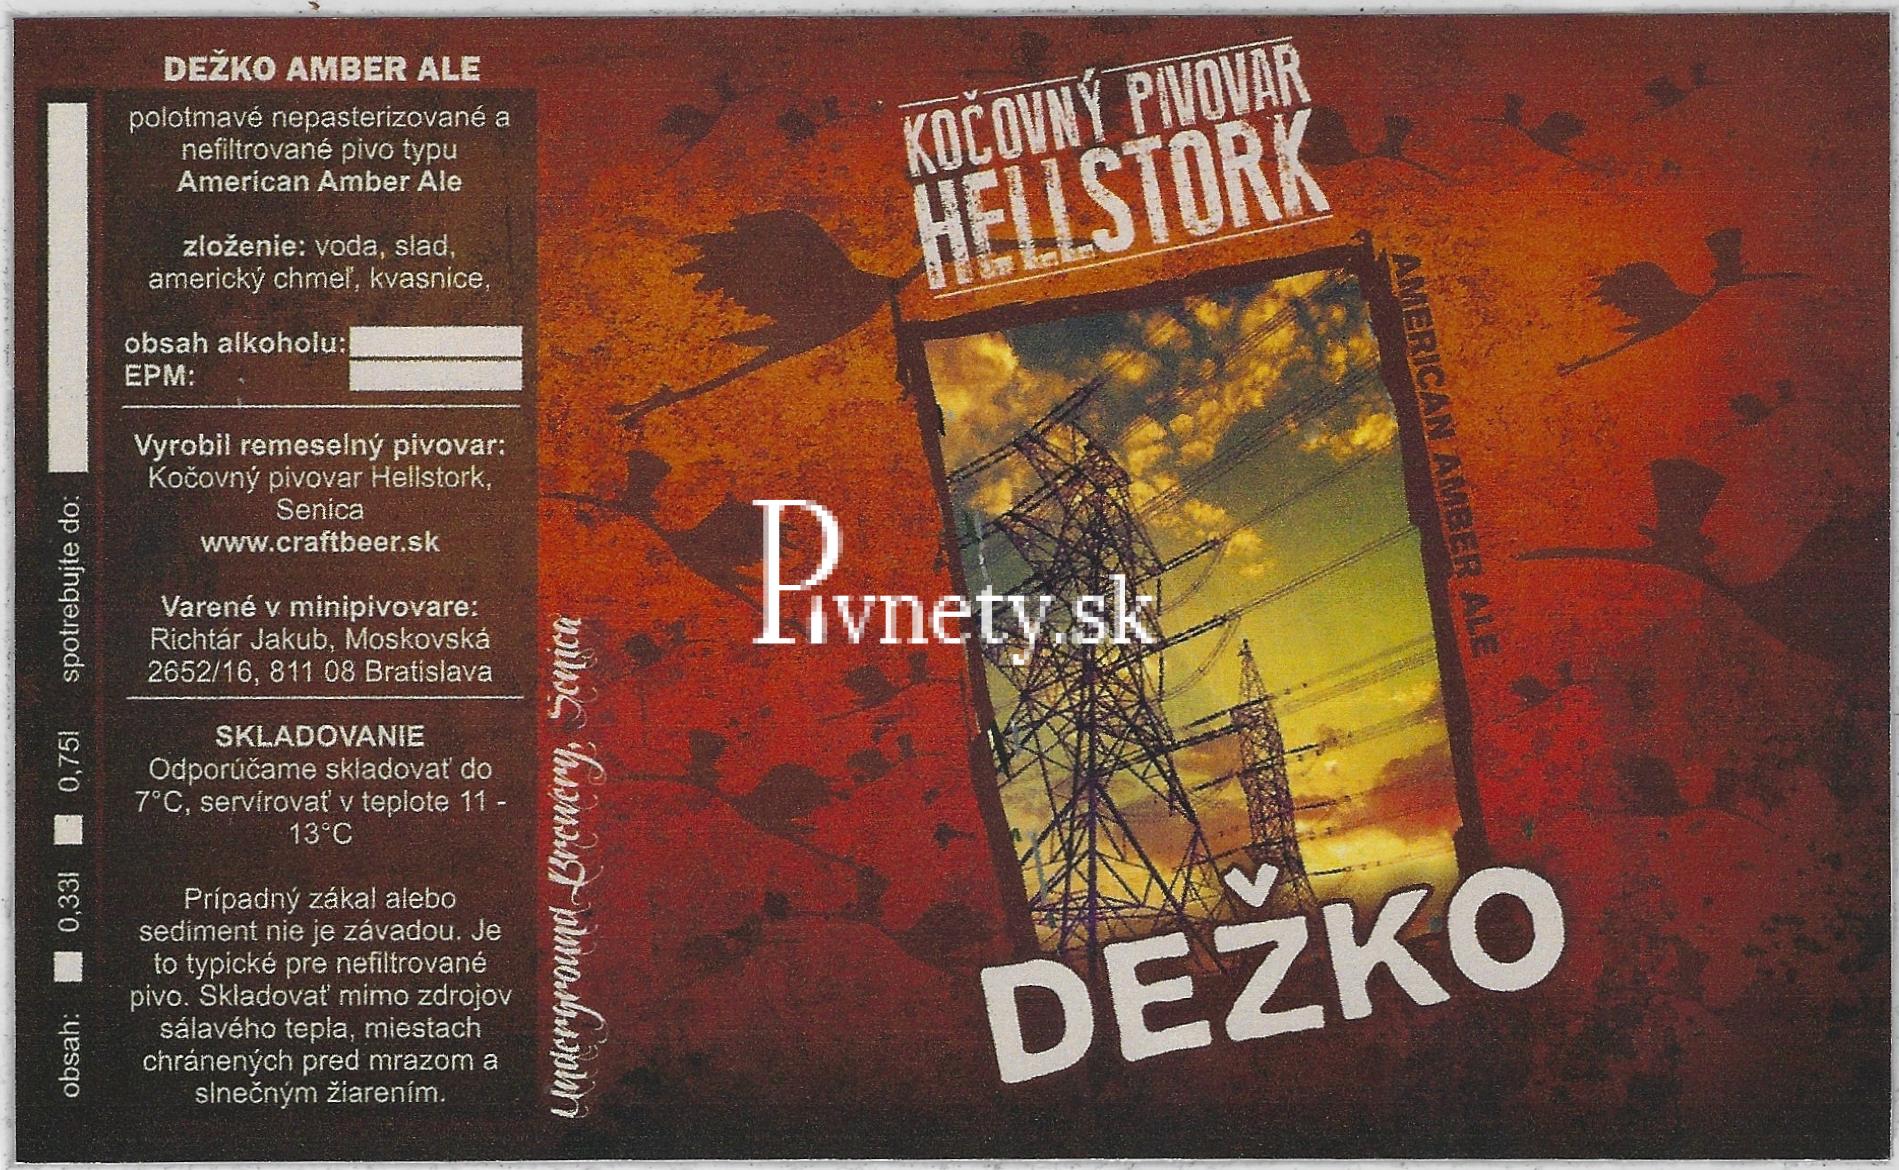 Kočovný pivovar Hellstork - Dežko